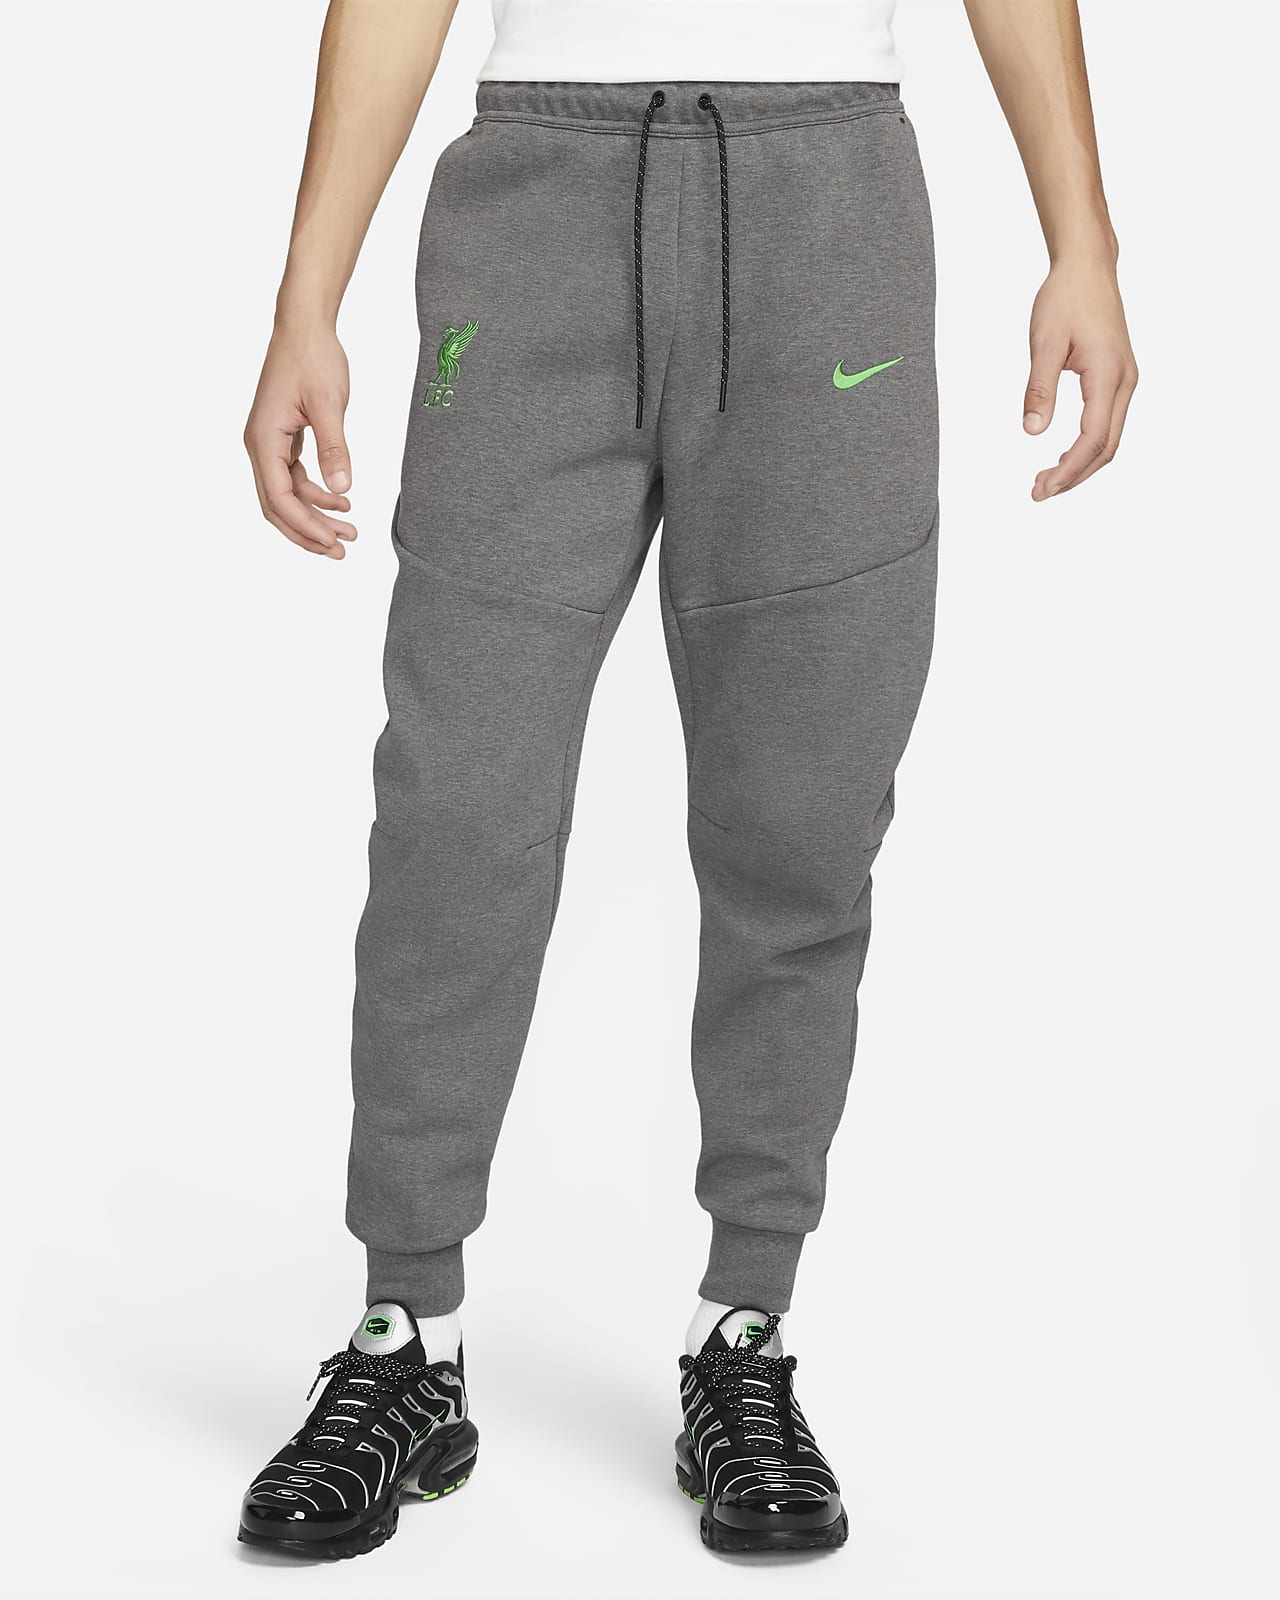 Ανδρικό παντελόνι φόρμας Nike Λίβερπουλ Tech Fleece